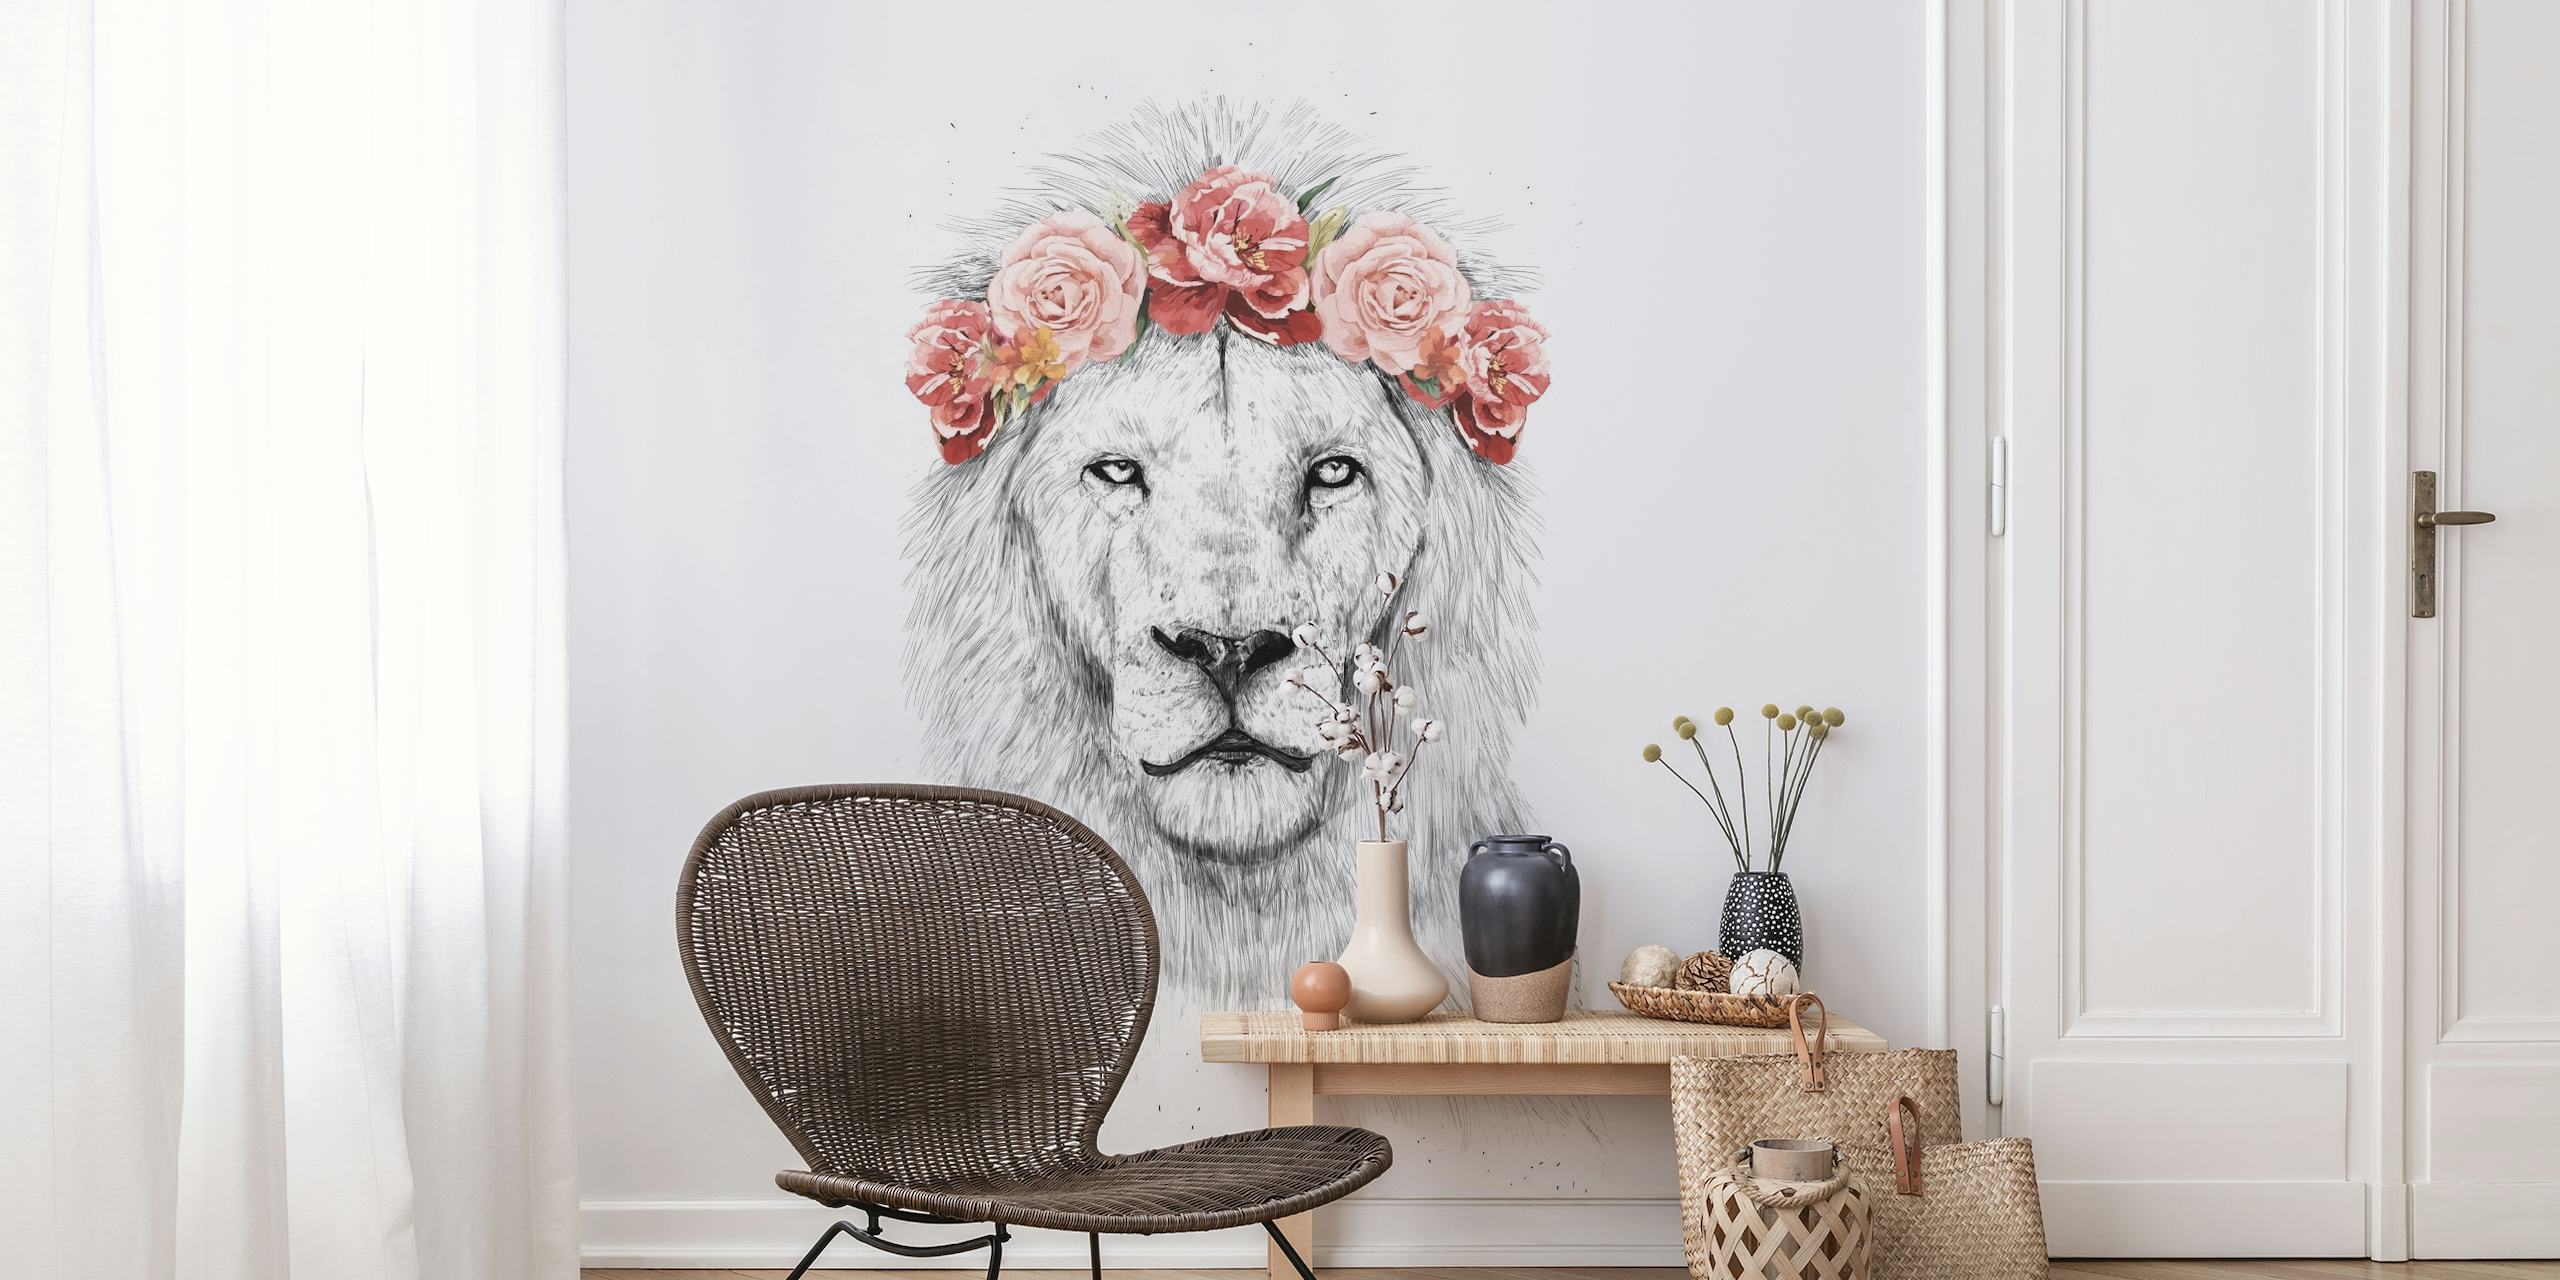 Festival lion papel pintado